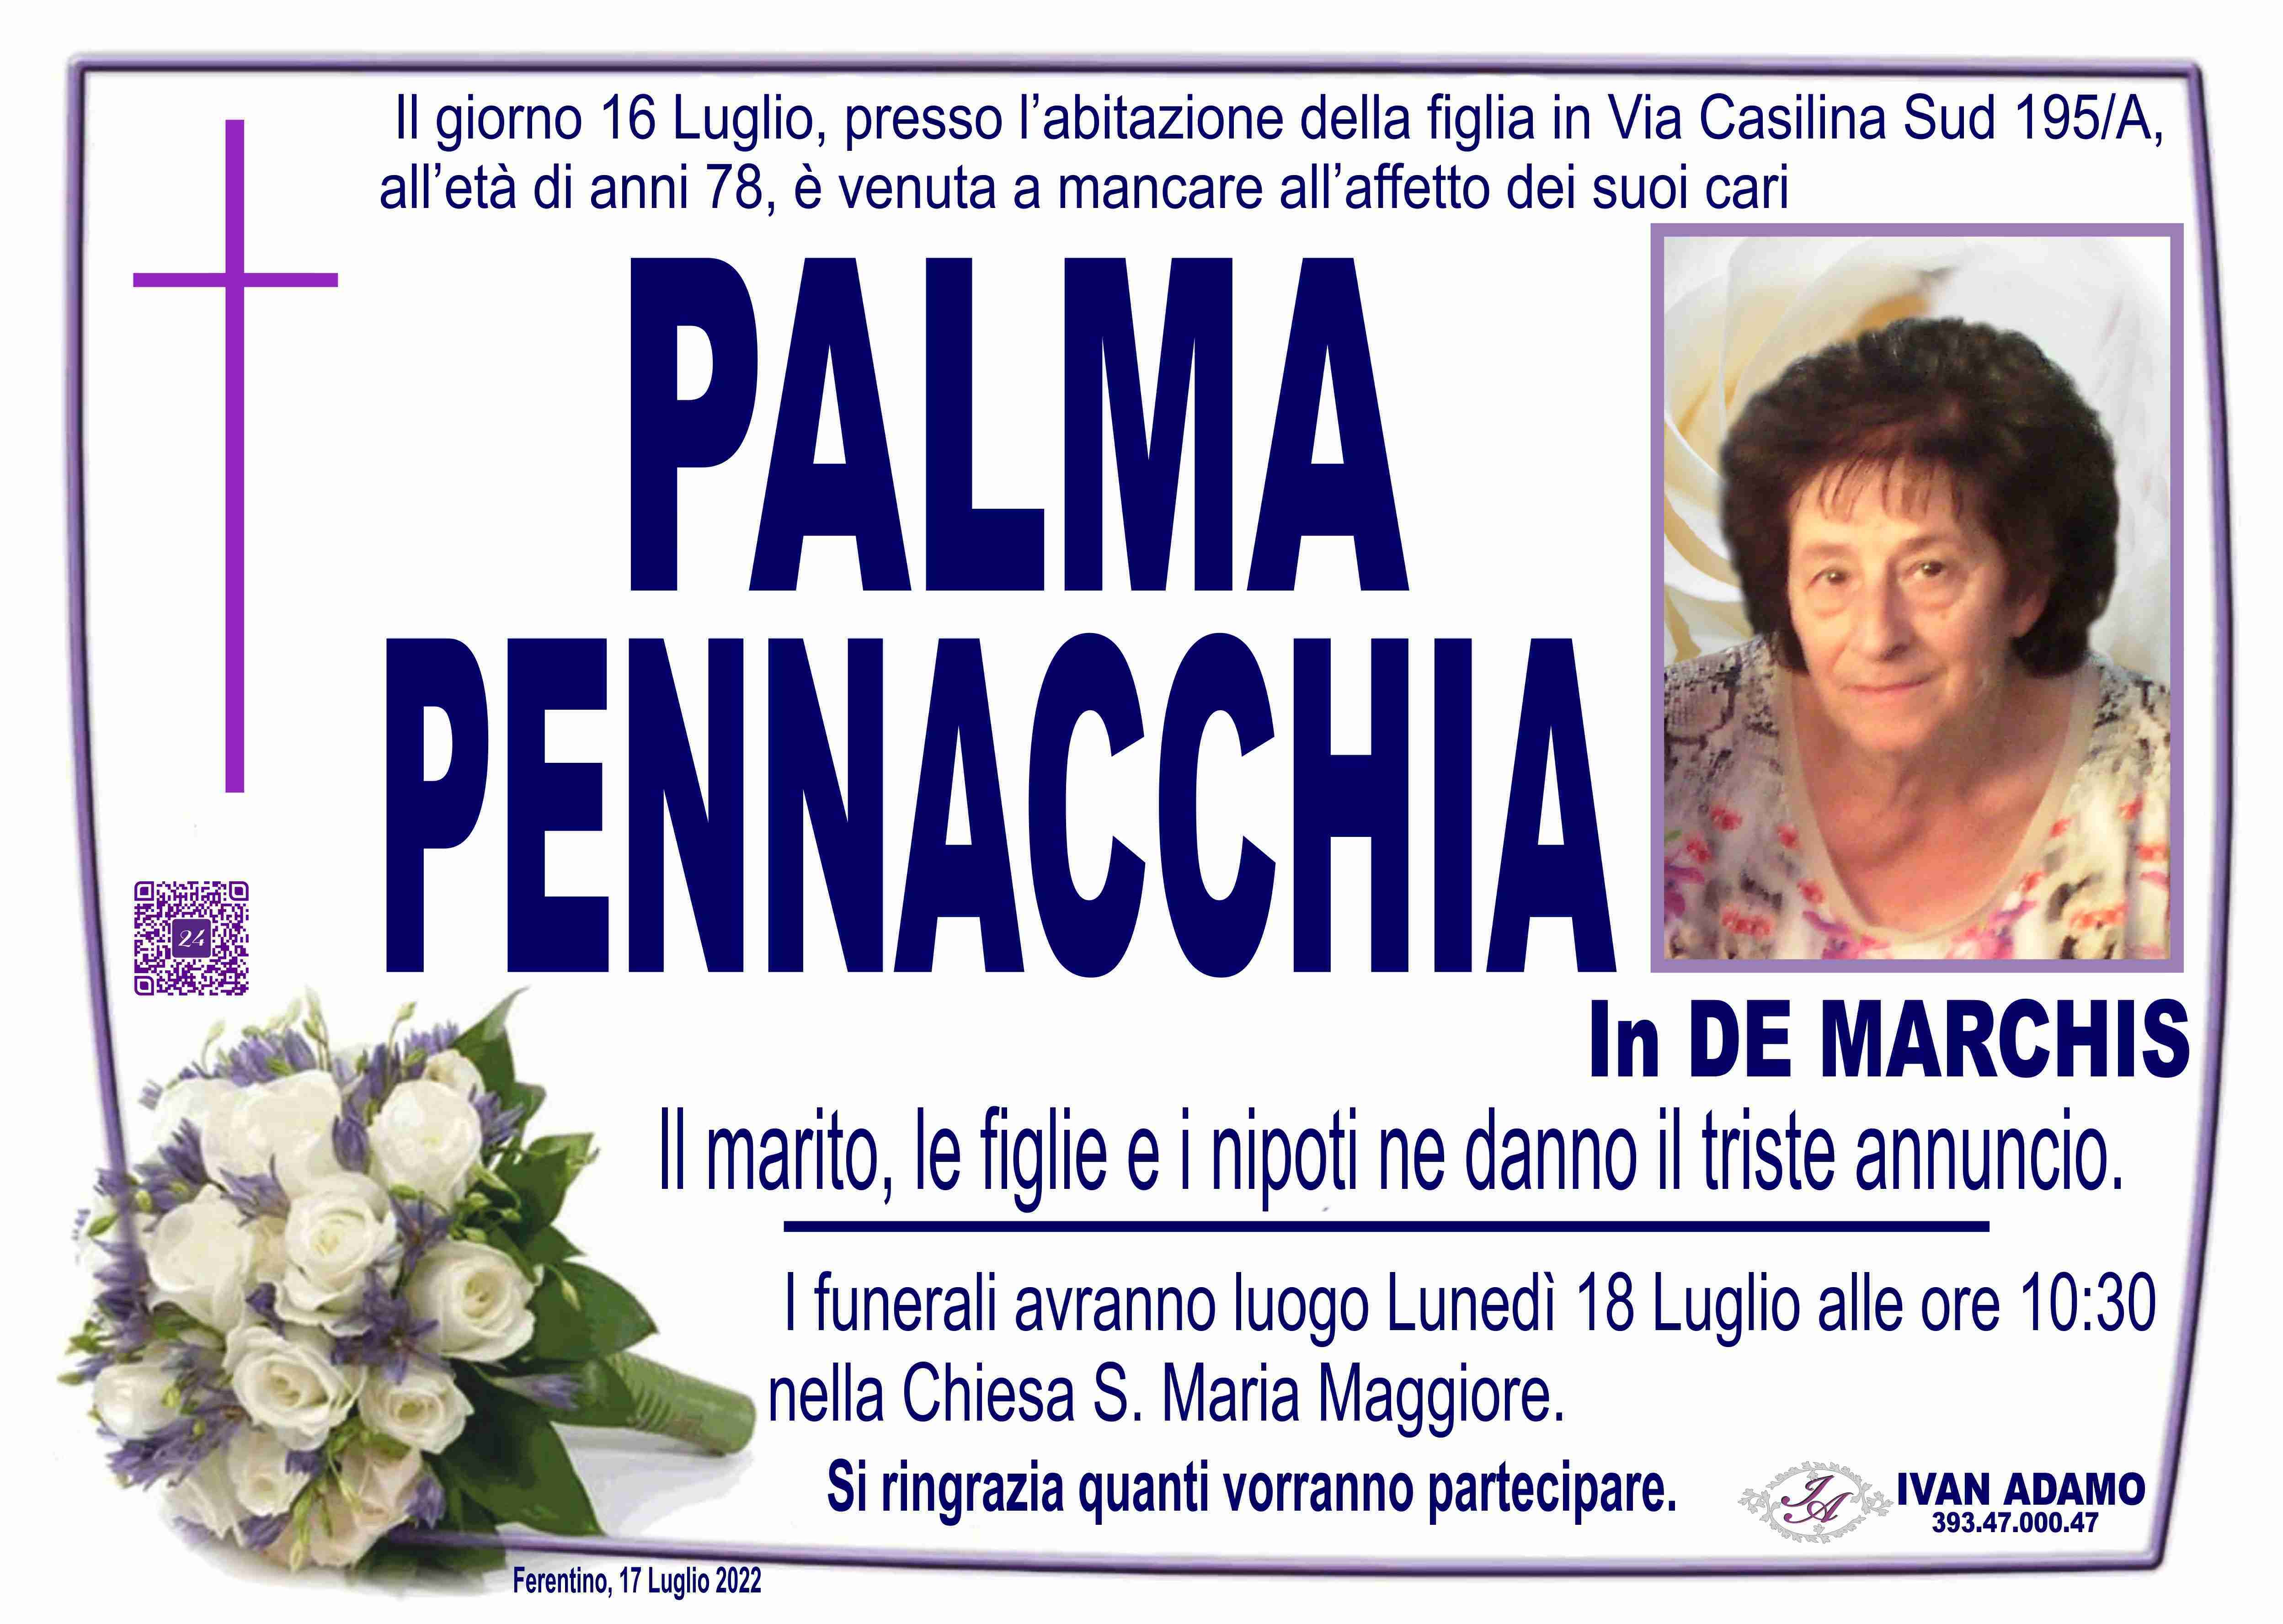 Palma Pennacchia